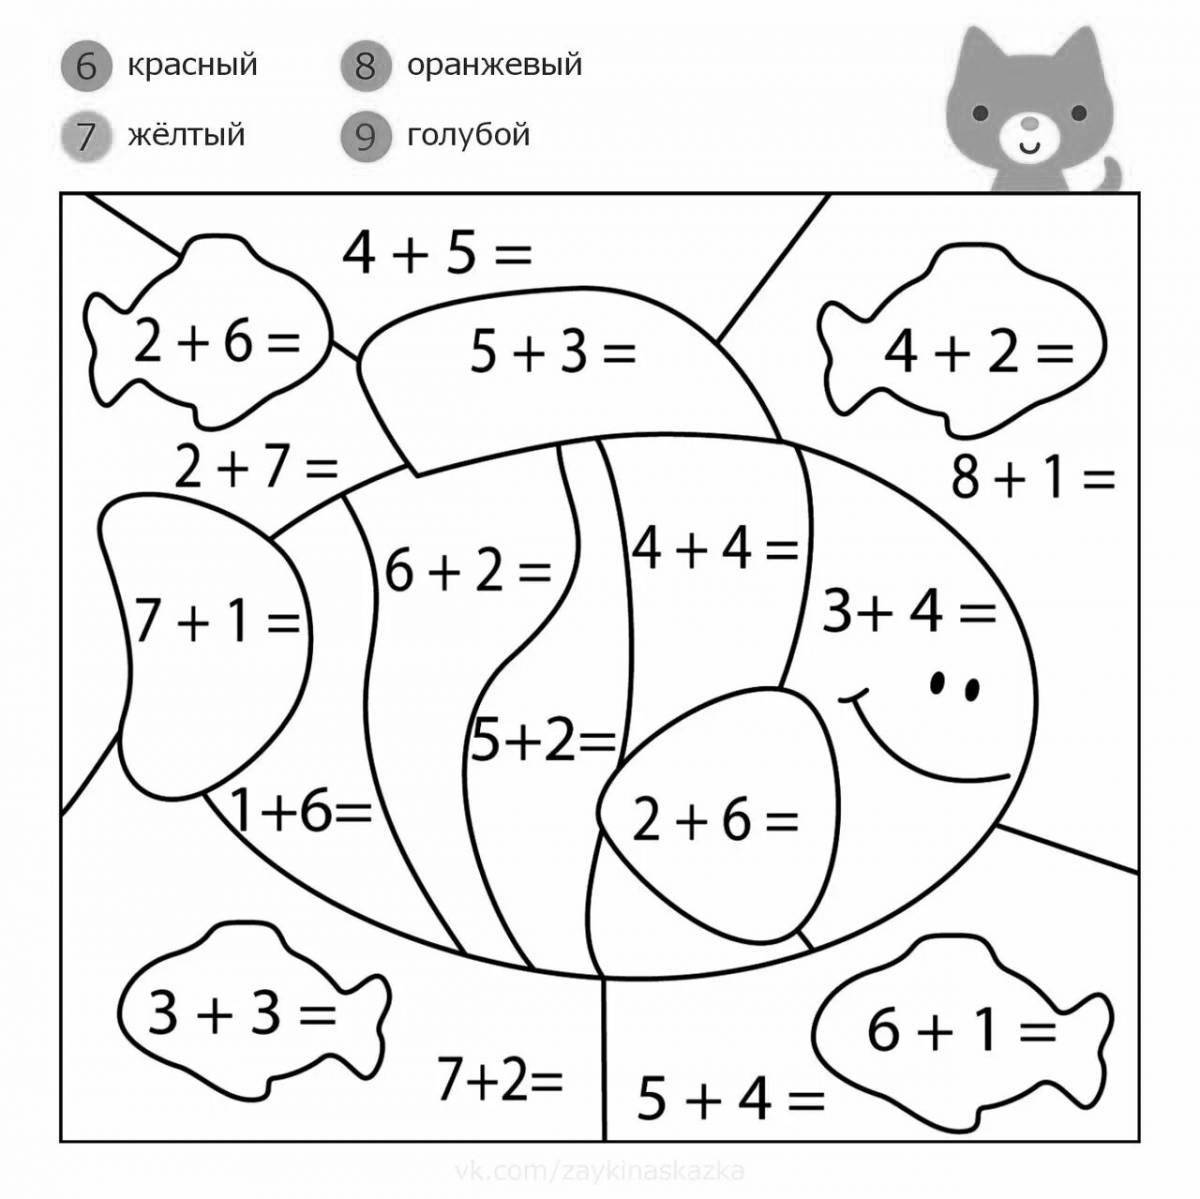 Увлекательная математическая раскраска для дошкольников